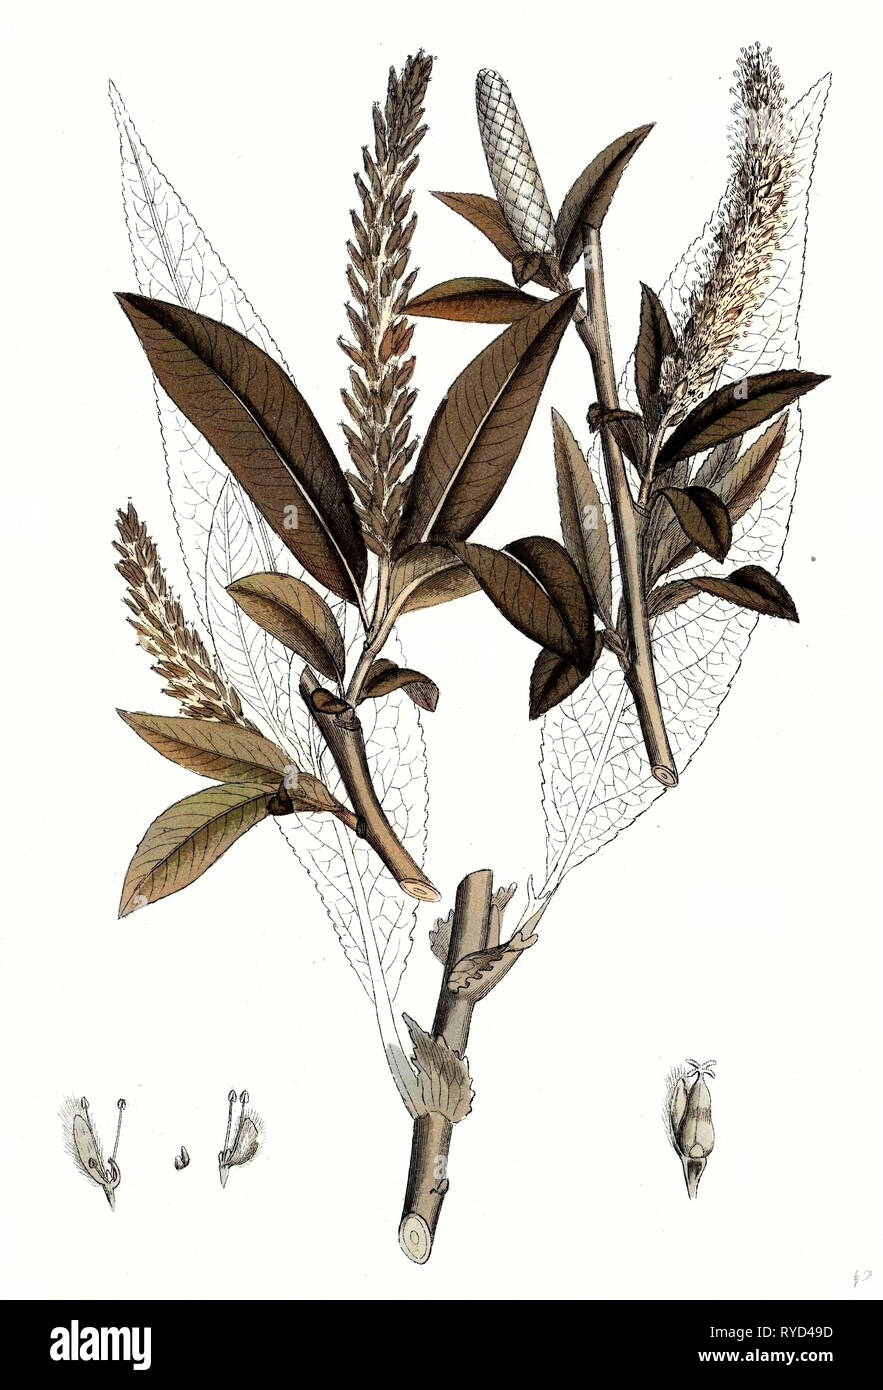 Salix Fragilis Var. Genuina Crack Willow Stock Photo